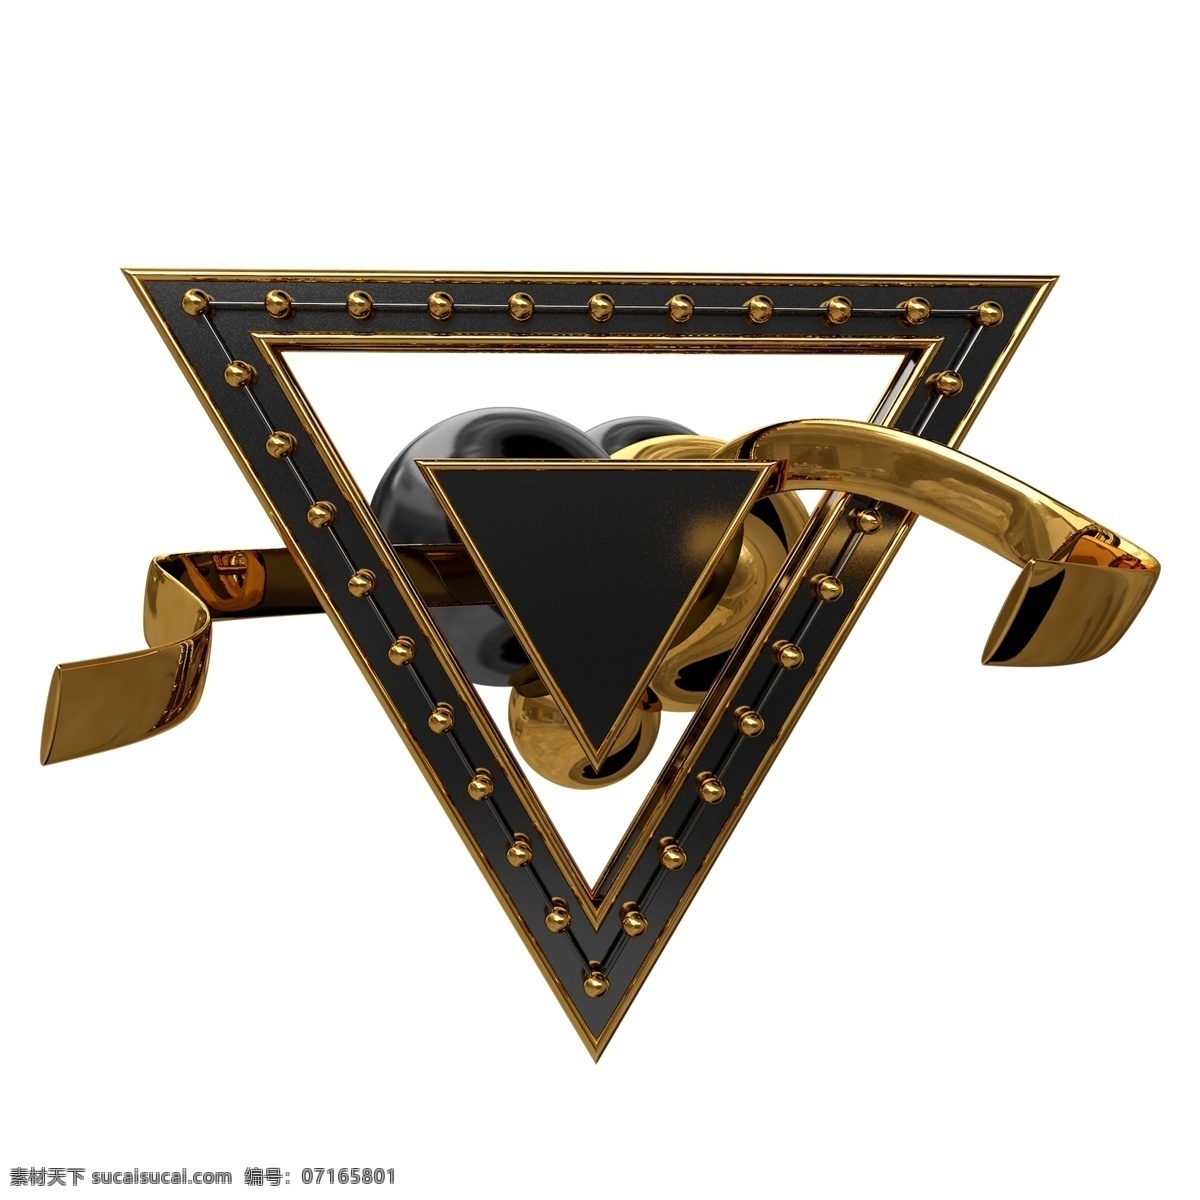 c4d 黑金 边框 装饰 金属 立体 背景 舞台 三角形 小球 黄金 黑色 金色 模型 源文件